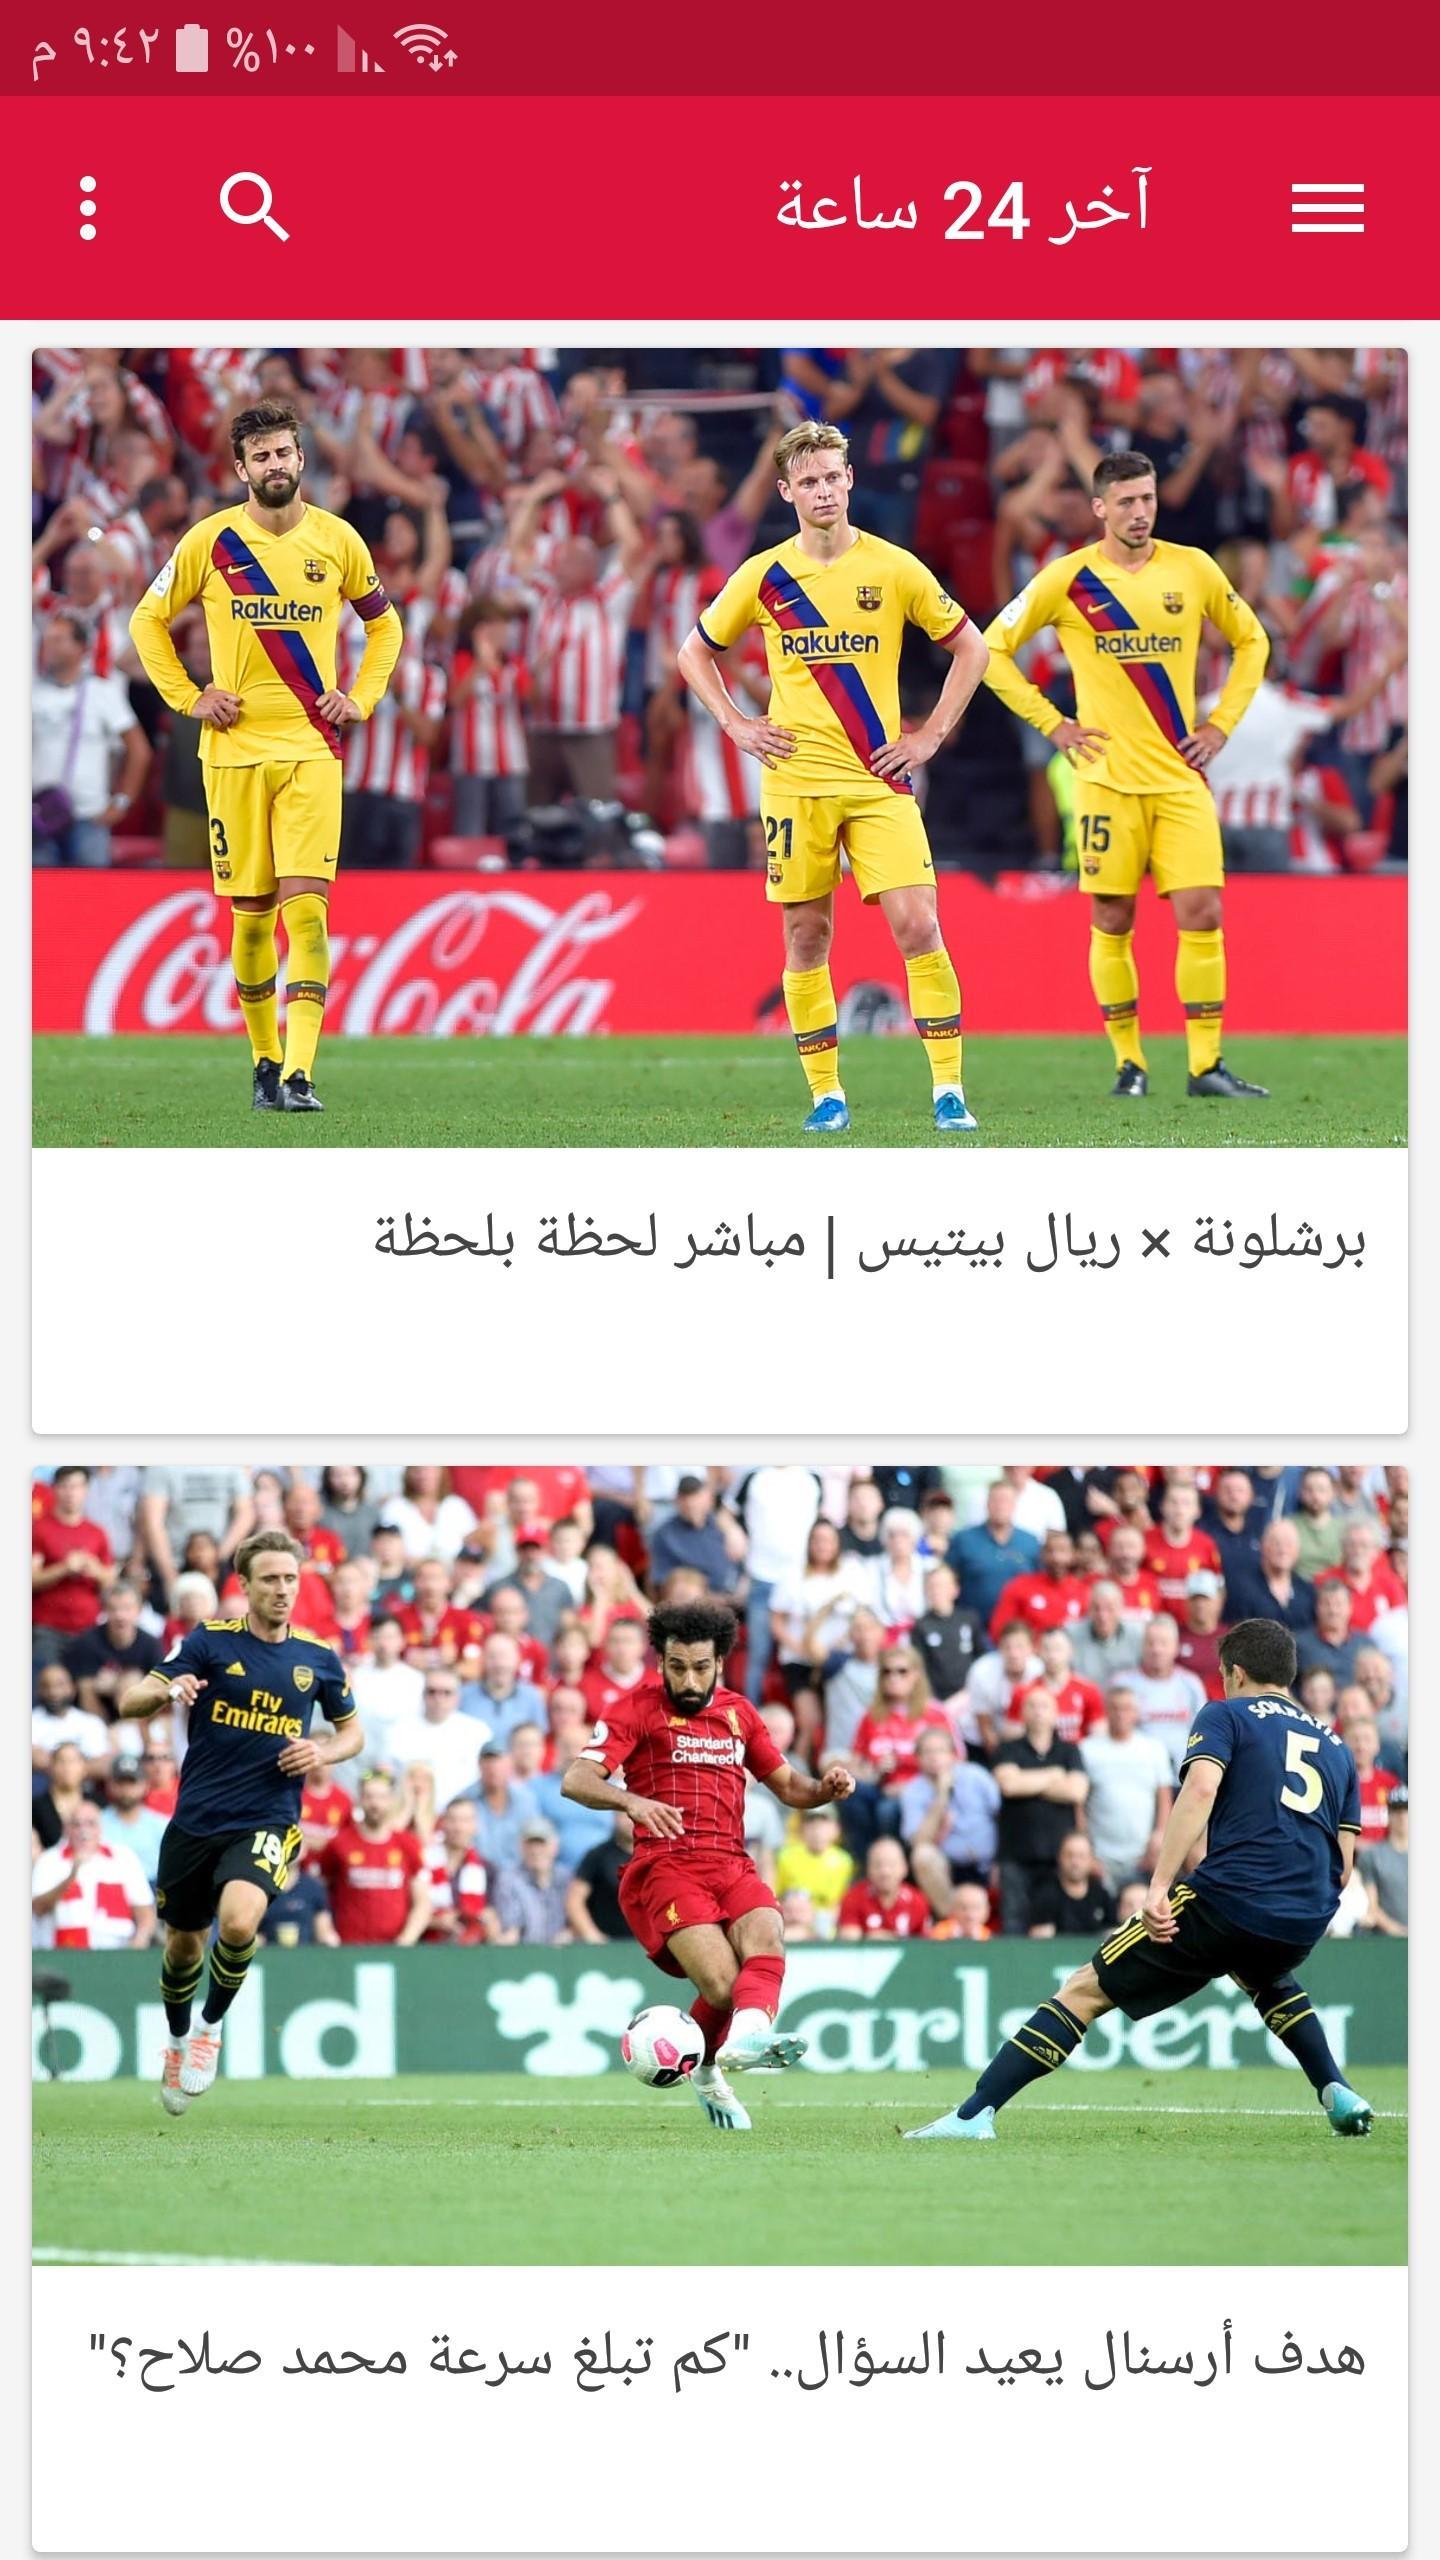 الرياضية السودانية الصحف الصحف الرياضية